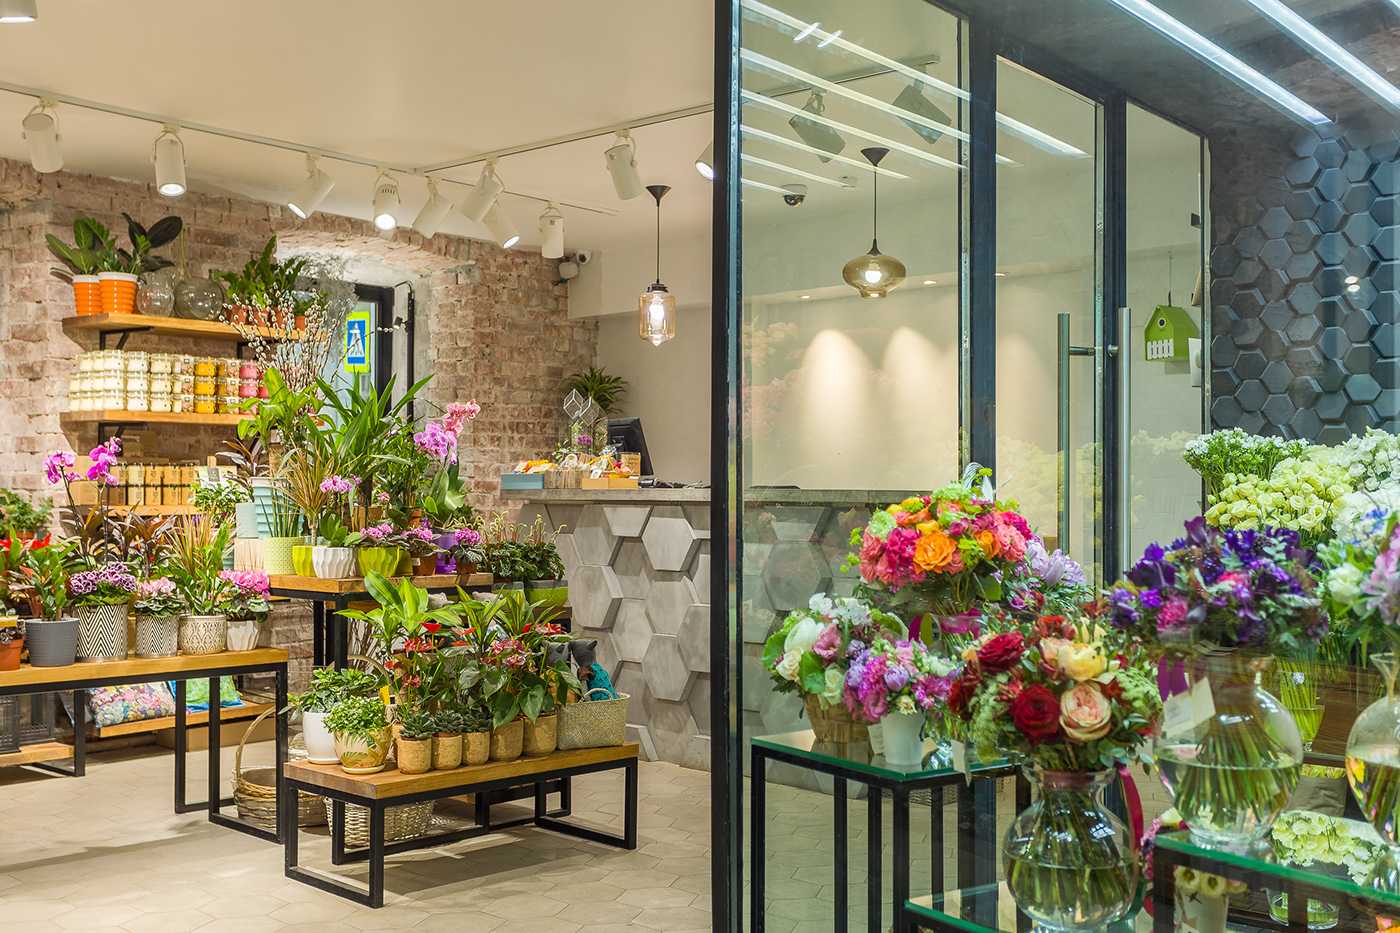 Бизнес план магазина цветов как открыть с нуля